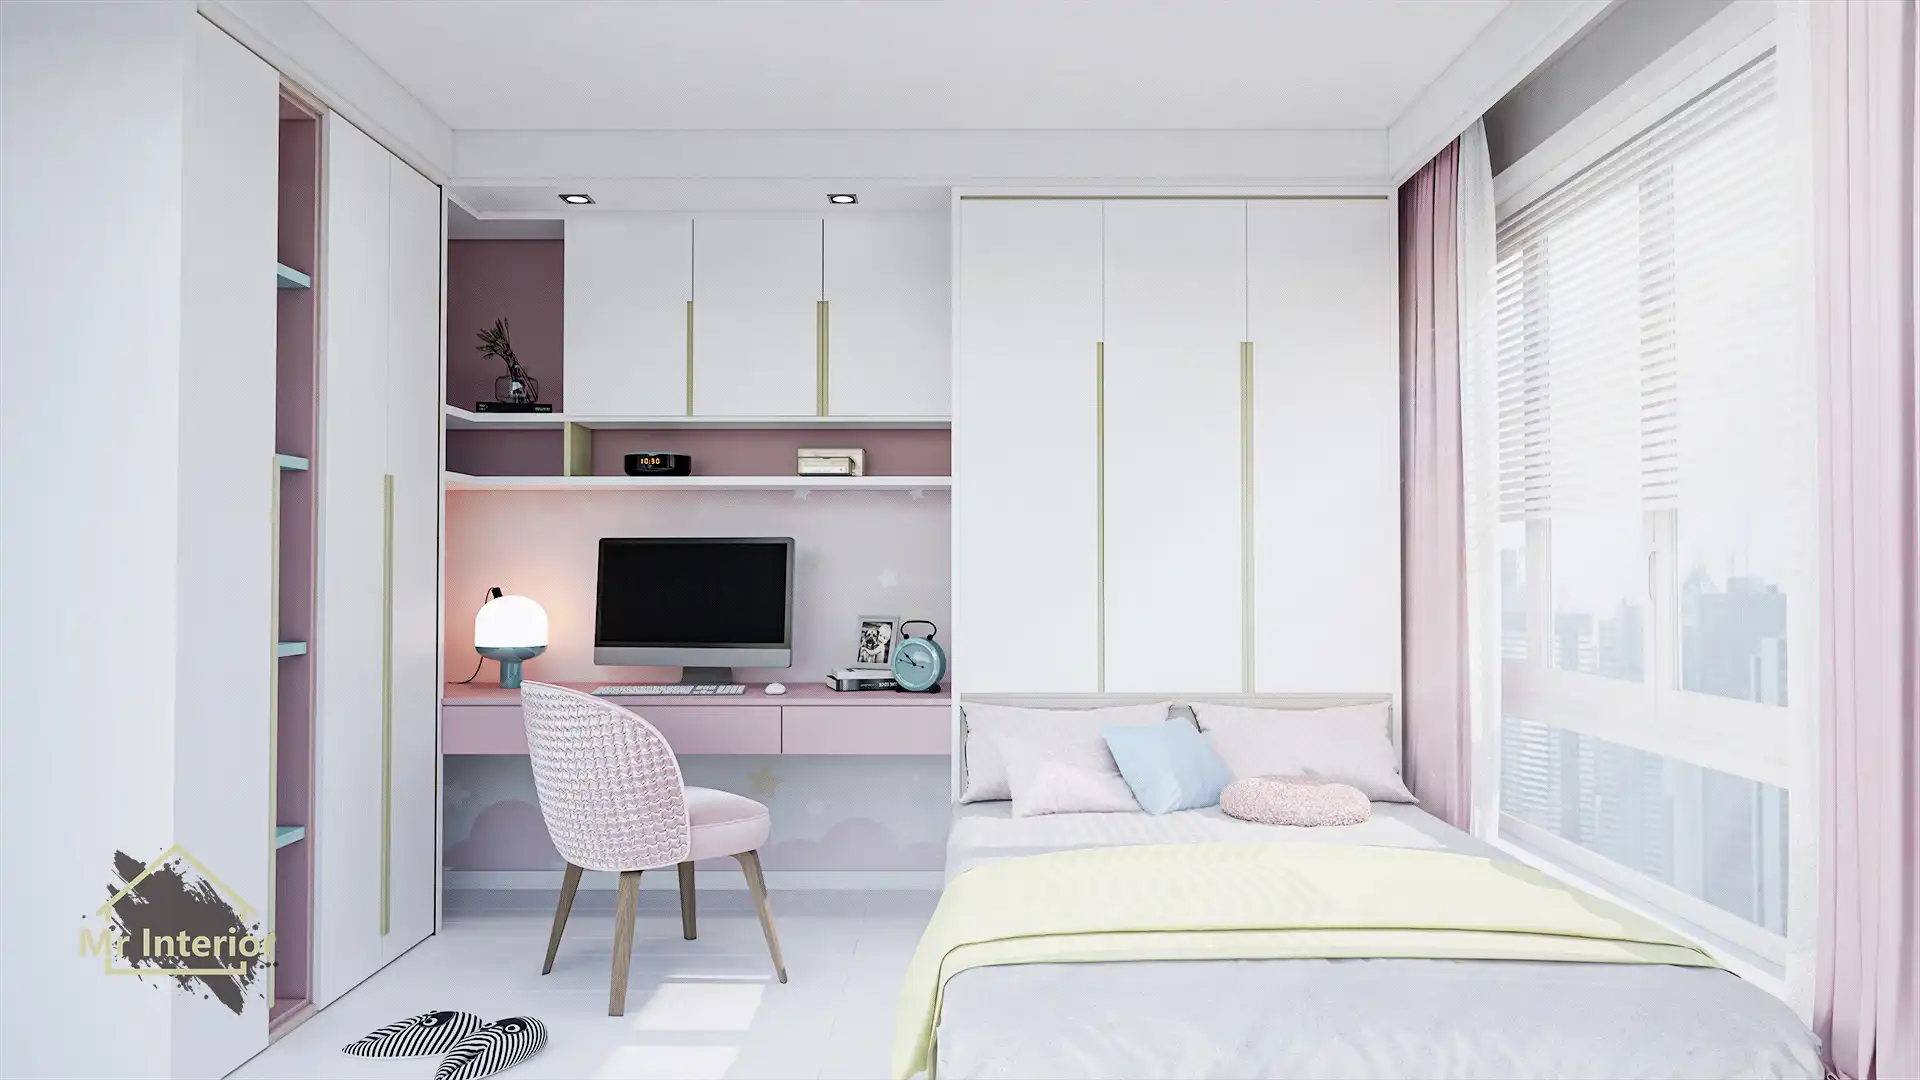 糖果風設計風格睡房，白色主調，粉紅色點綴。雙人床，書枱，衣櫃，床頭櫃。Mr Interior室內設計、裝修、傢俬風格。